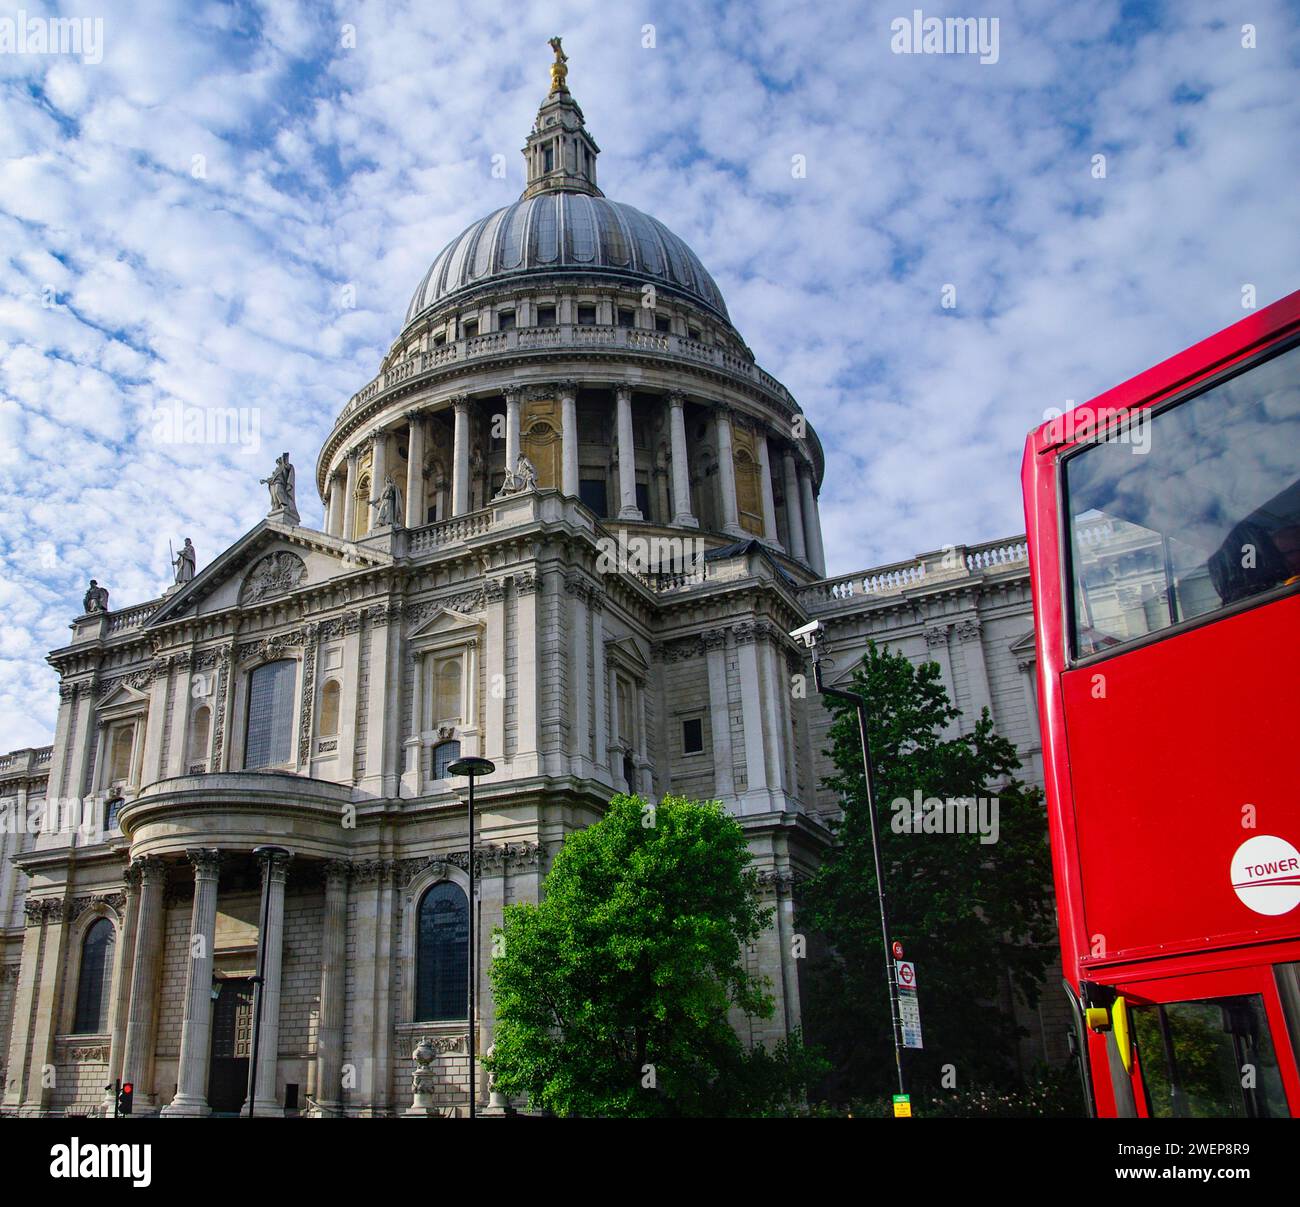 Londra: Die St. Cattedrale di Paul. - Zu den bekanntesten Bauwerken Londons gehört Die St Cattedrale di Paul. SIE ist eine der größten Kathedralen der We Foto Stock